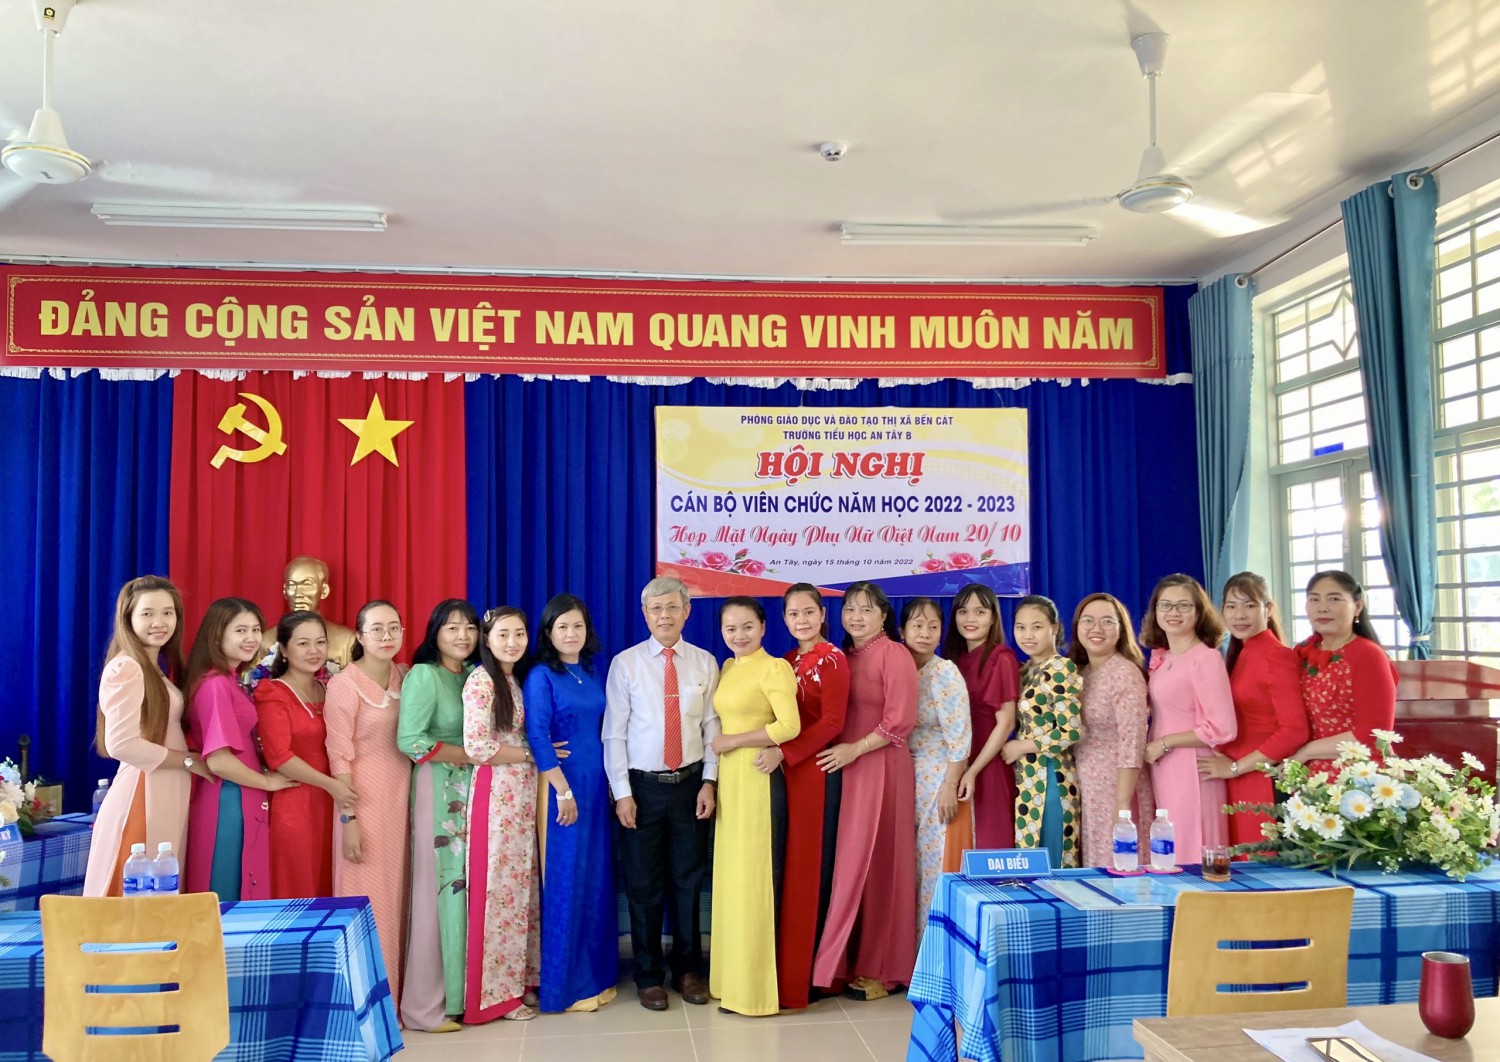 Trường Tiểu học An Tây B tổ chức Hội nghị Cán bộ viên chức năm học 2022 - 2023 và Họp mặt ngày Phụ nữ Việt Nam 20/10